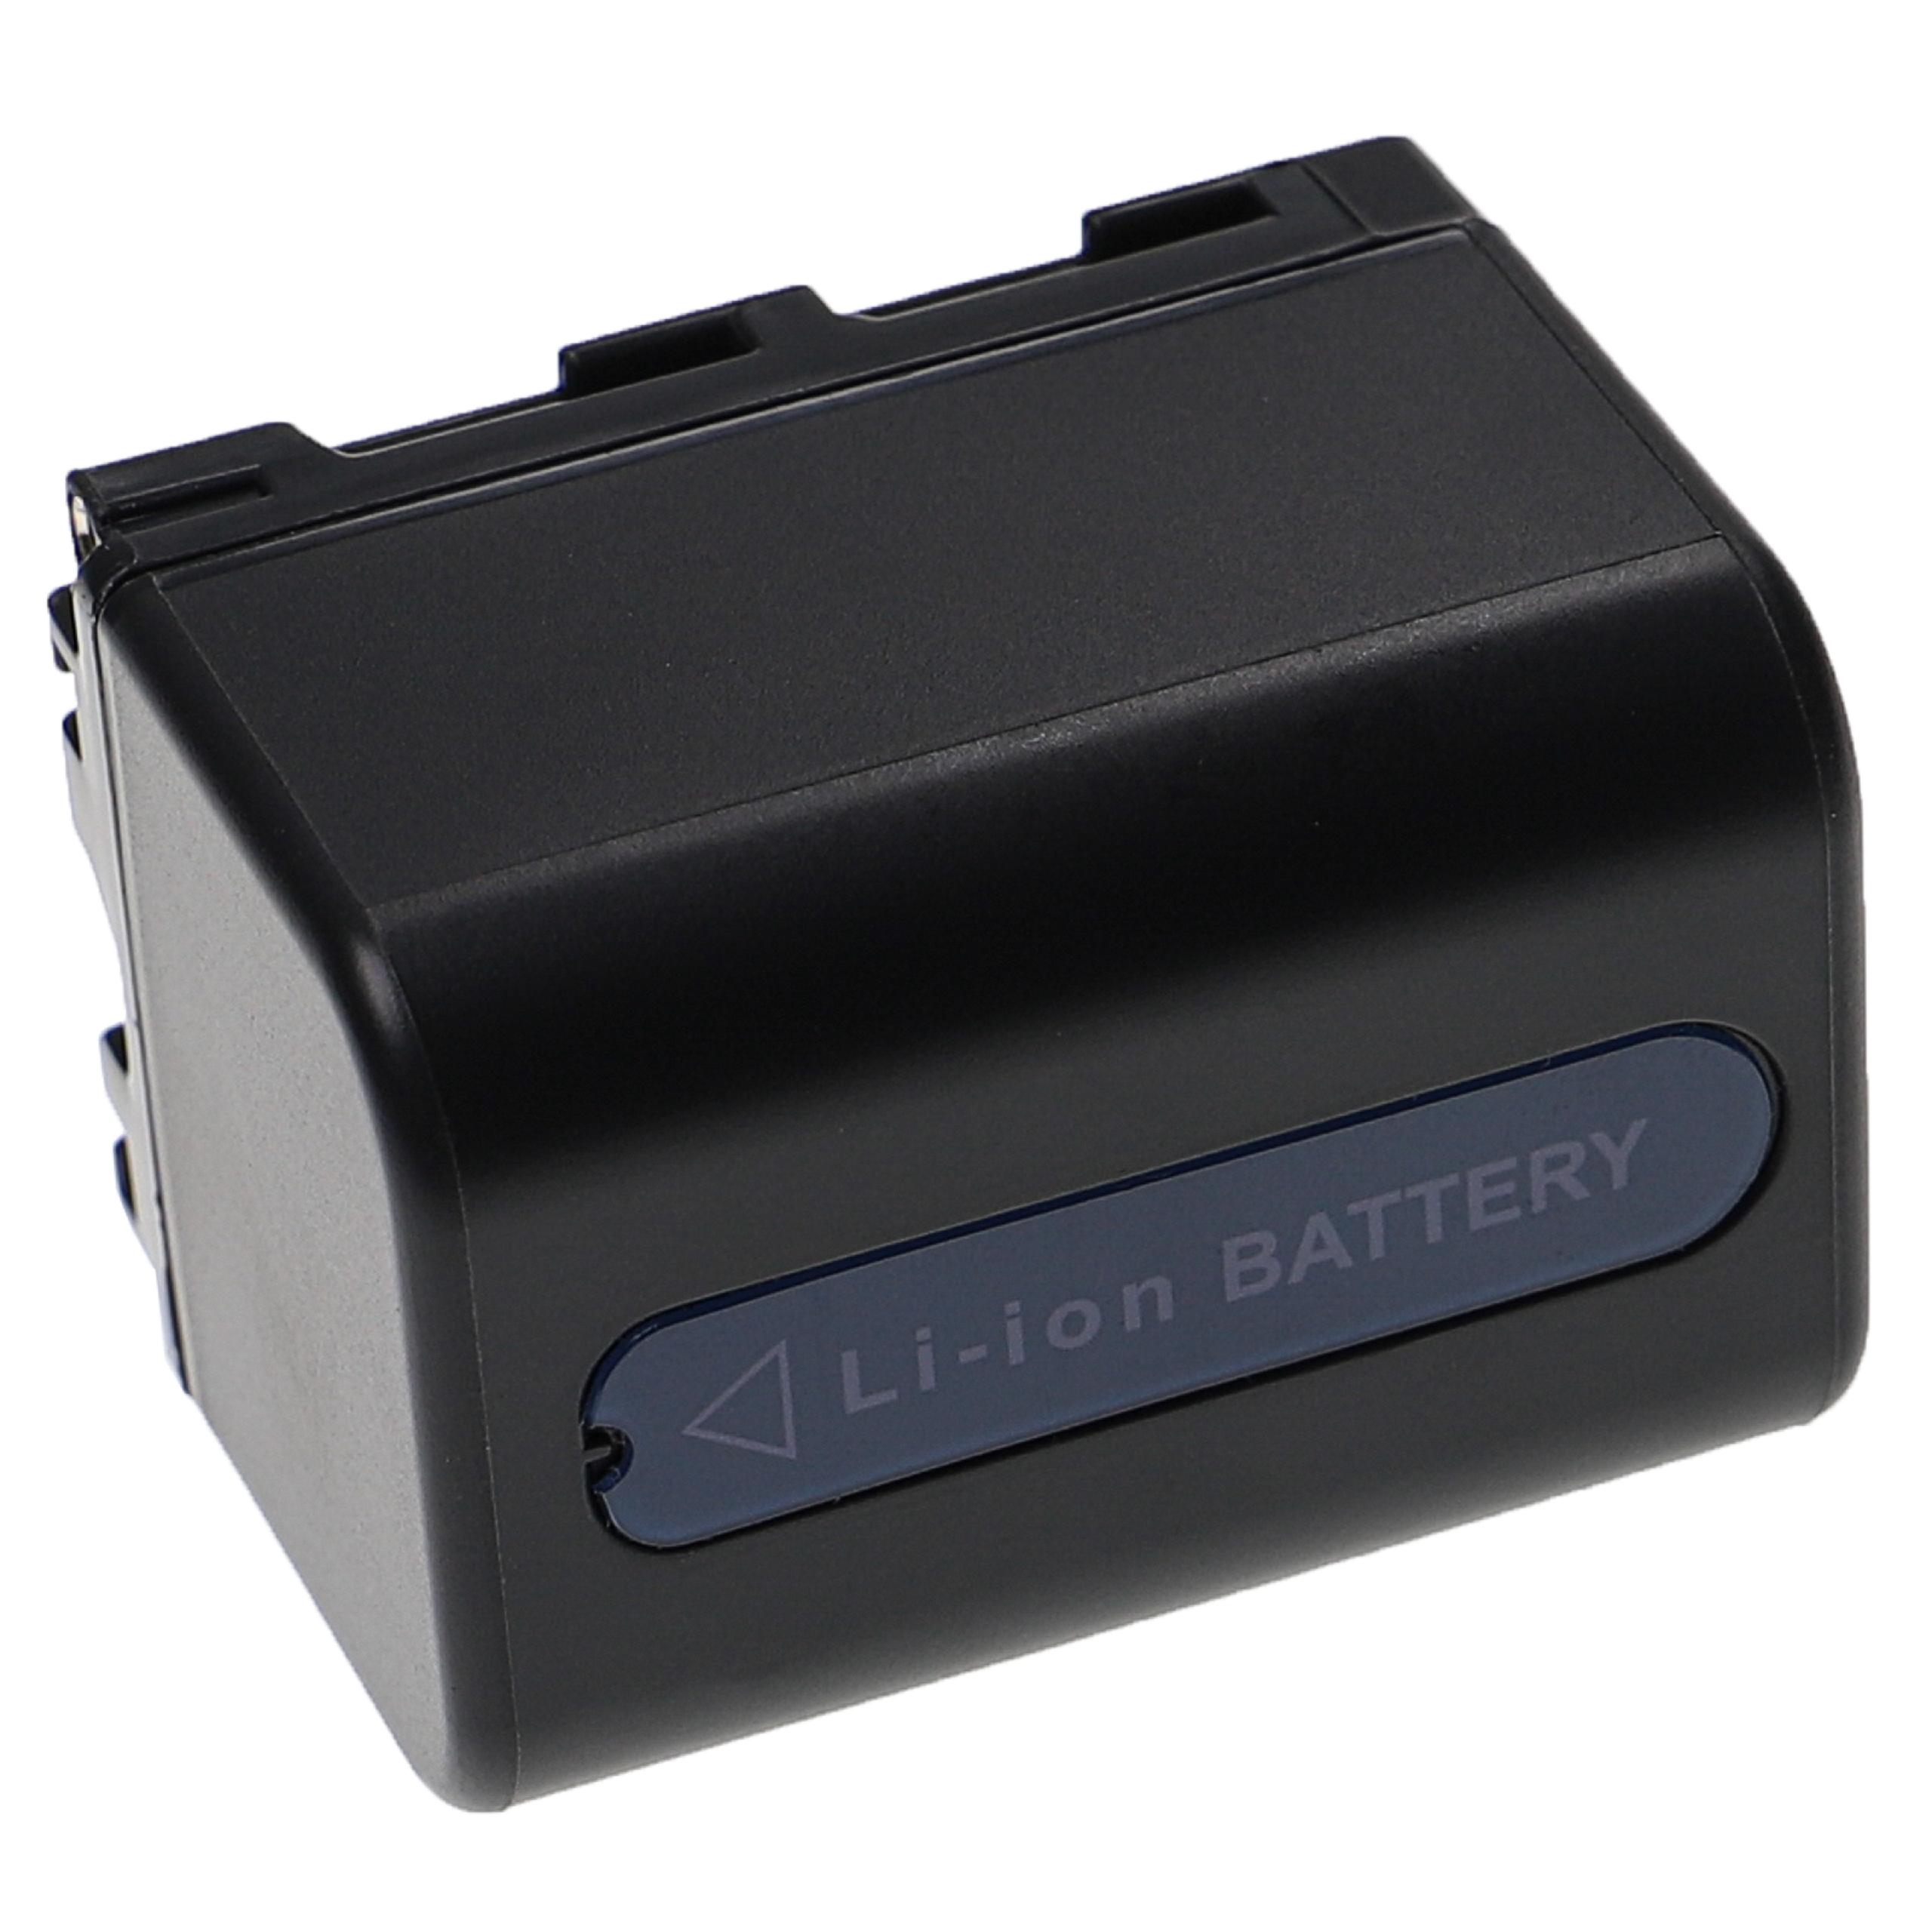 Batterie remplace Sony NP-FM55H, NP-FM90, NP-FM70, NP-FM50, NP-FM30 pour appareil photo - 3200mAh 7,4V Li-ion